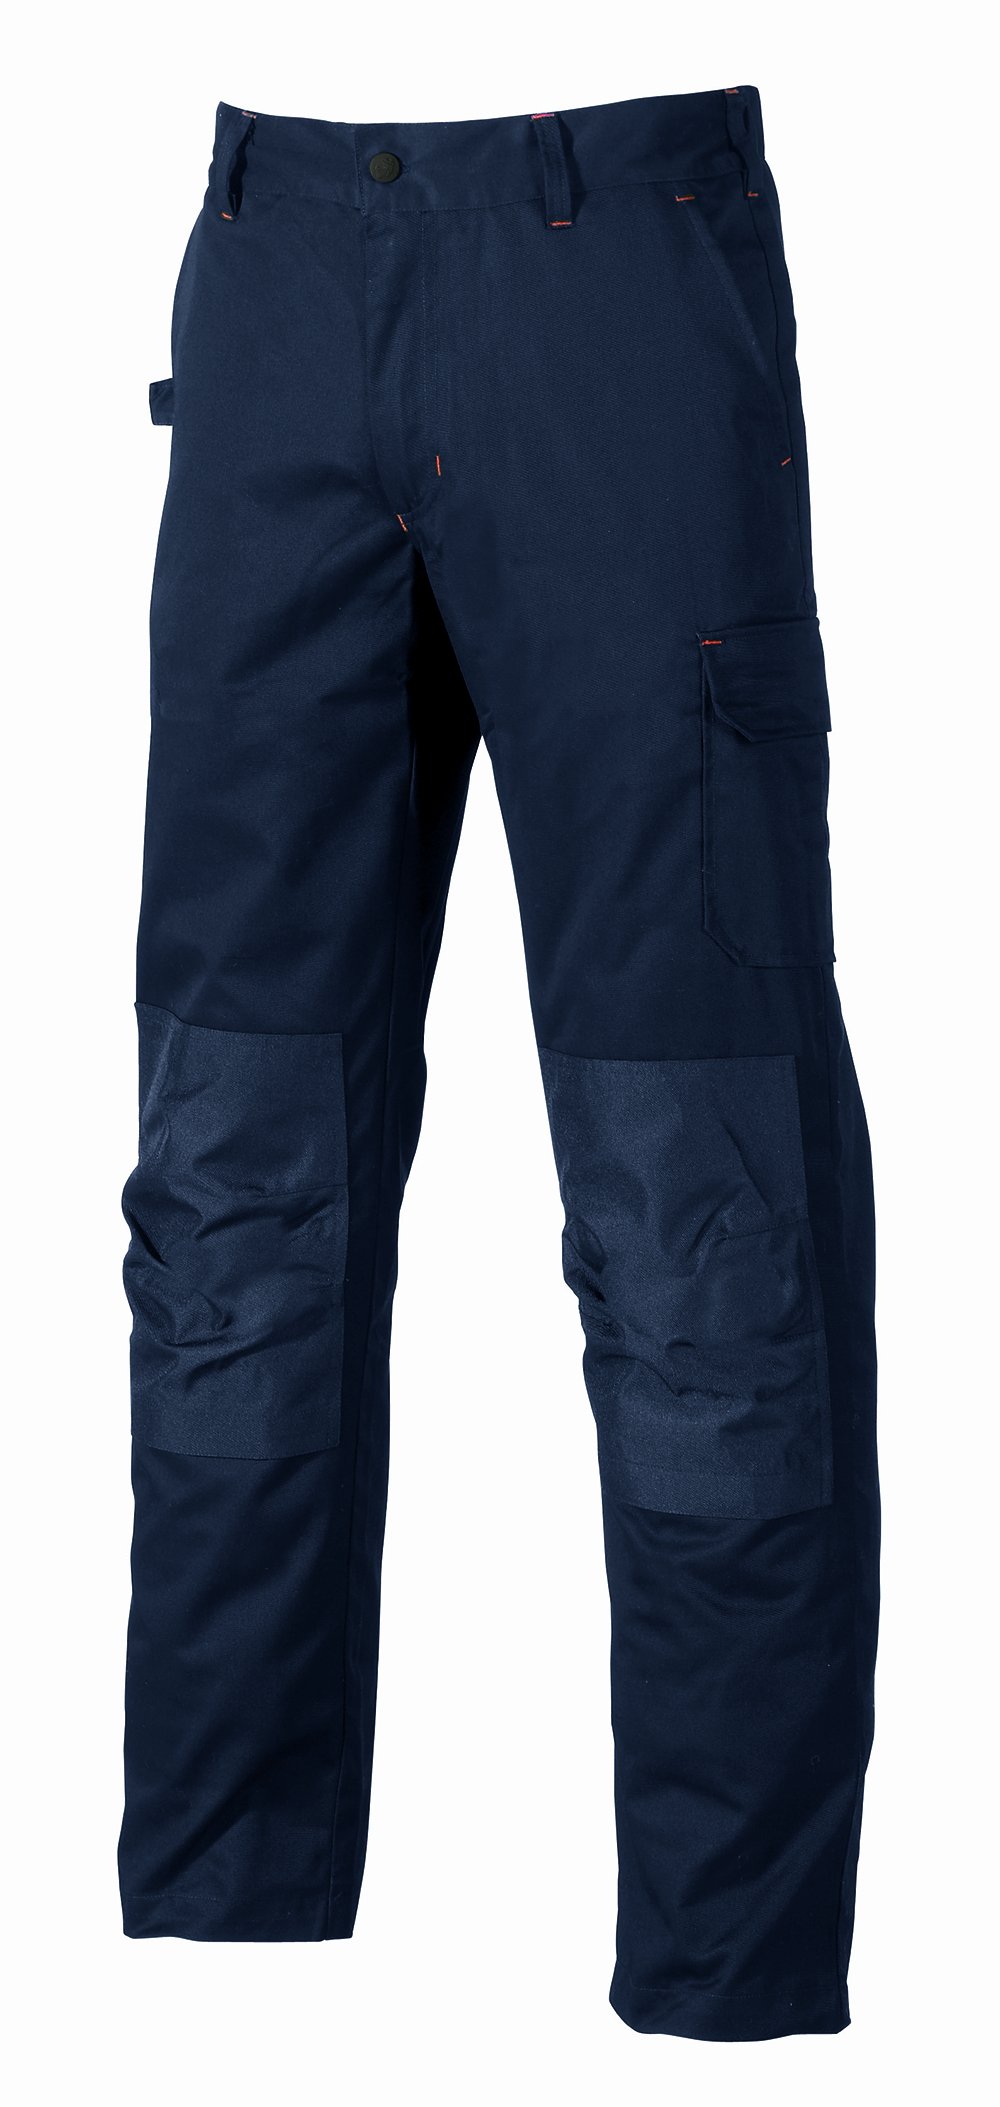 Pantalone da lavoro lungo alfa col.blu scuro tg.46